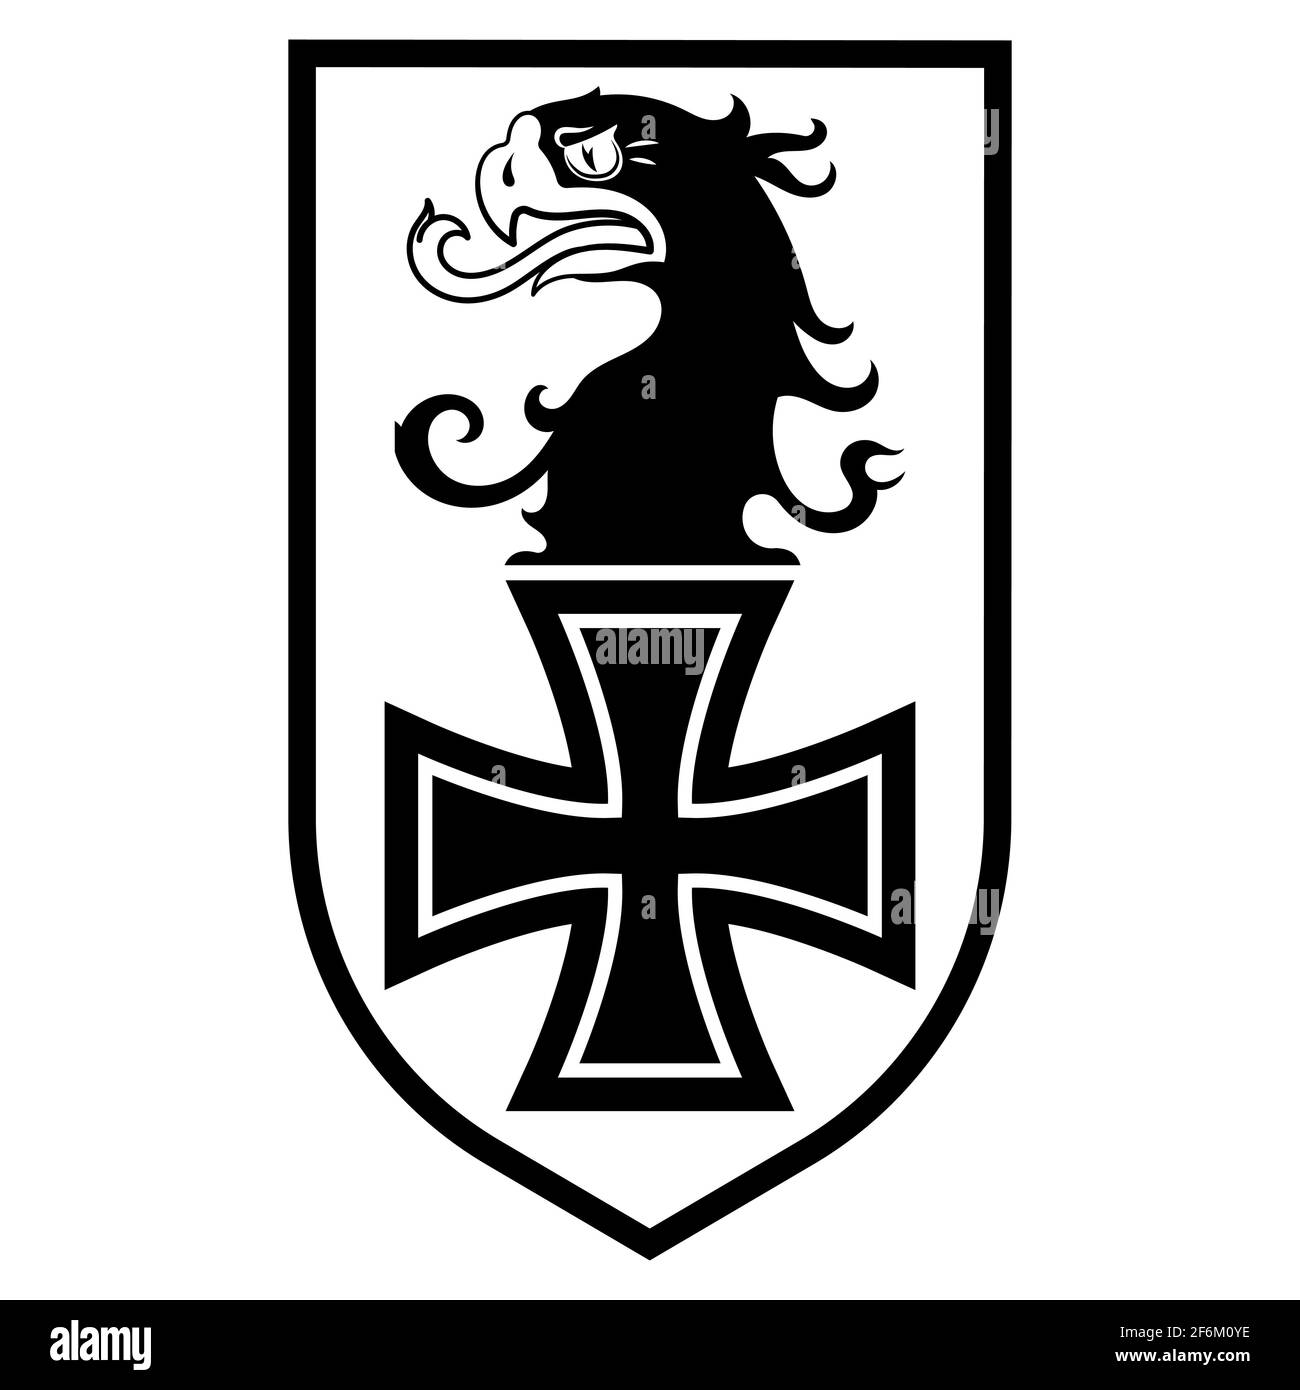 Distintivo dell'Aeronautica militare tedesca. Testa dell'aquila e croce di ferro Illustrazione Vettoriale